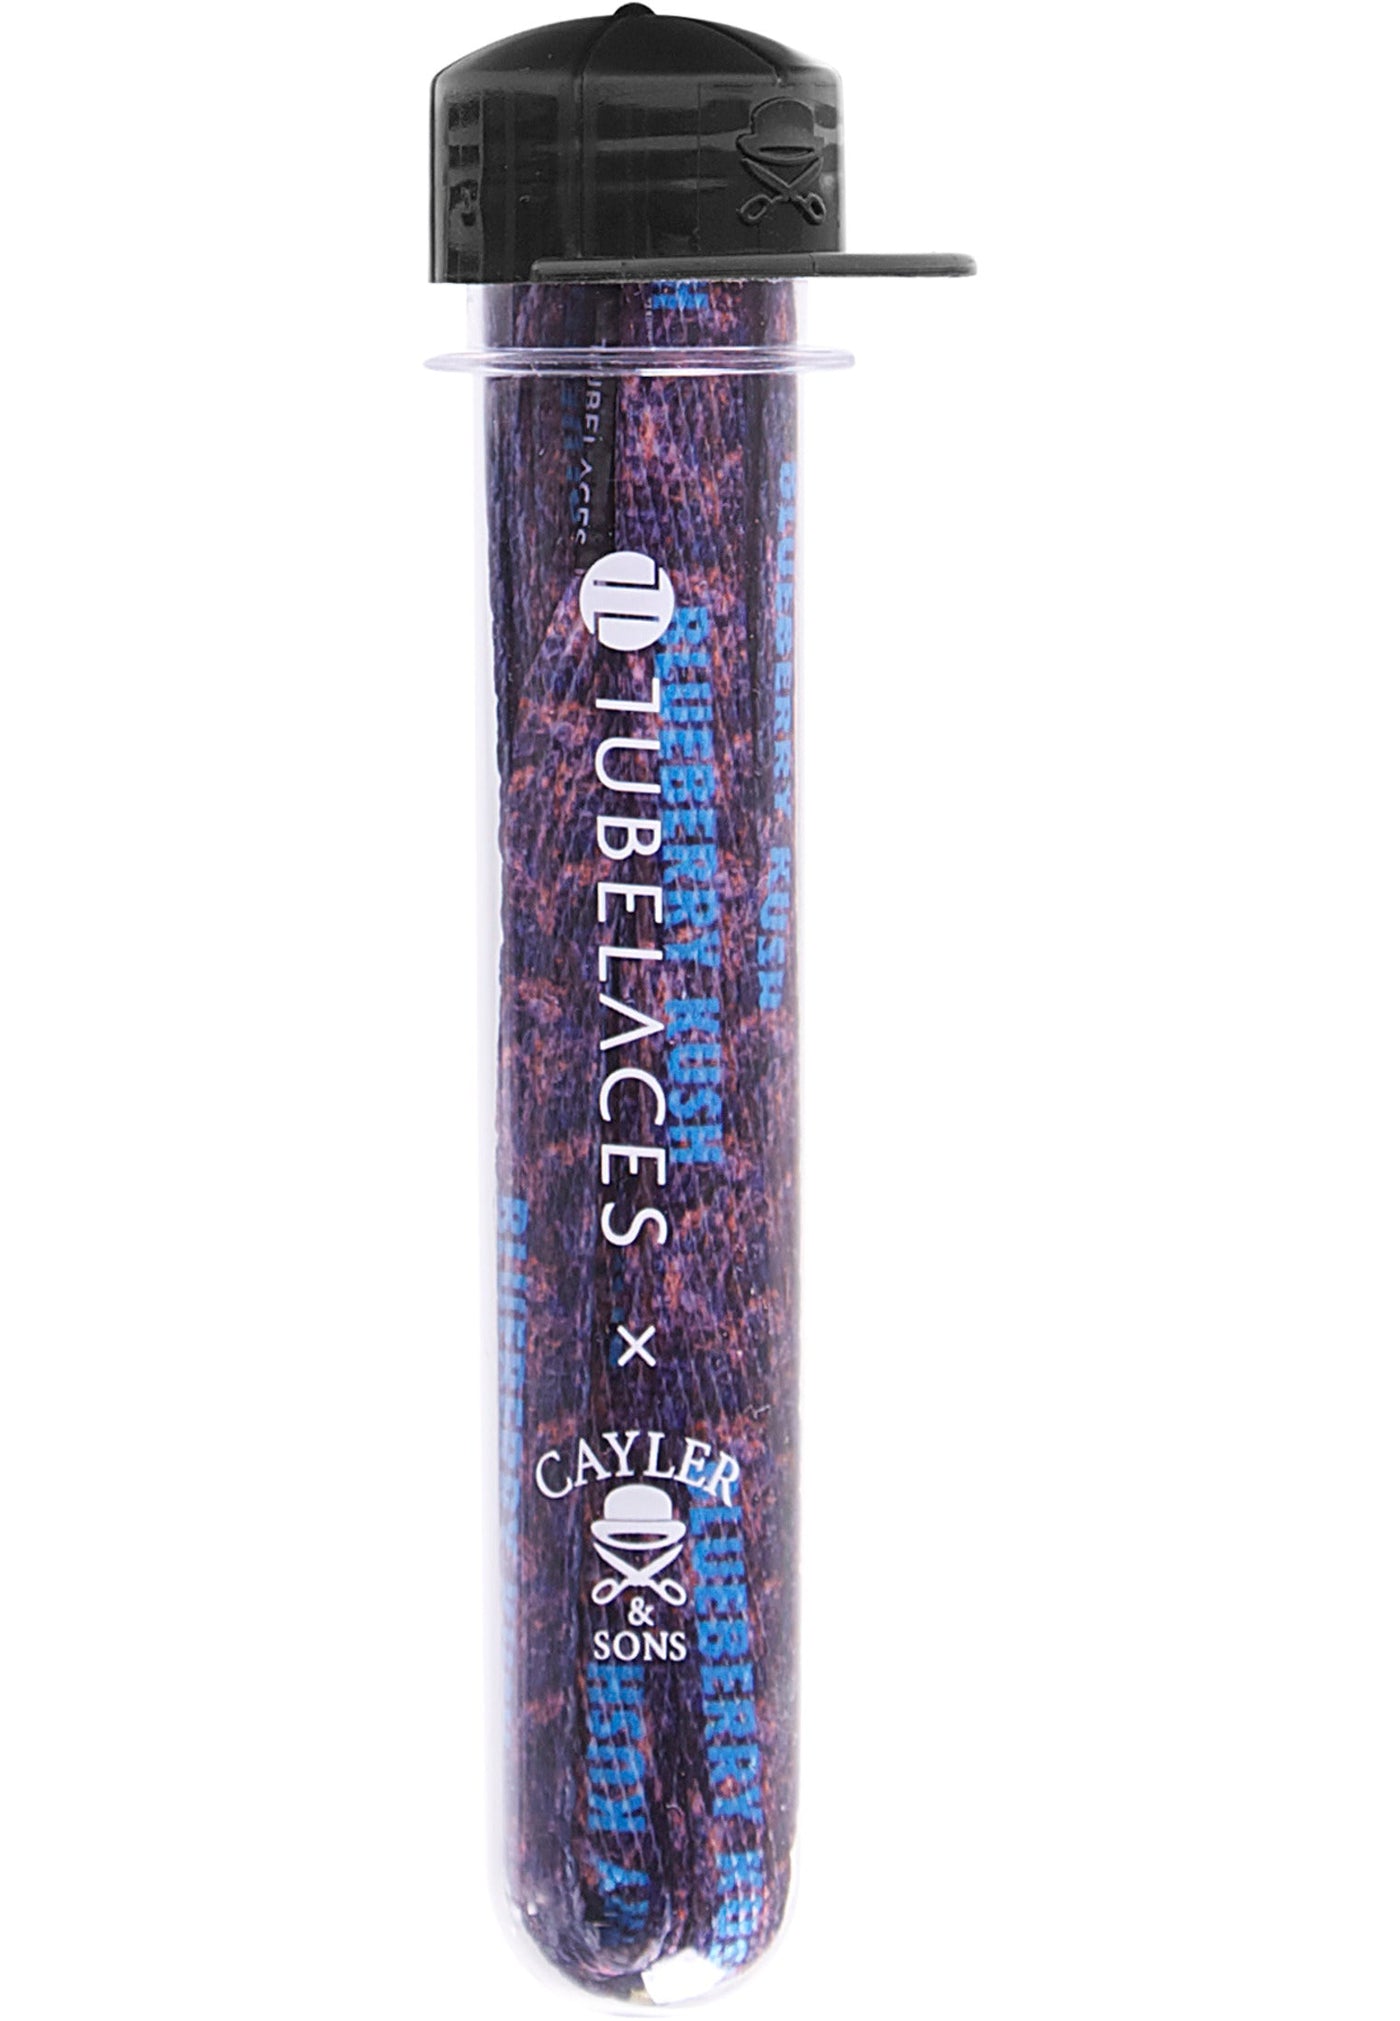 Tubelaces C&amp;S 10602 - blueberry kush